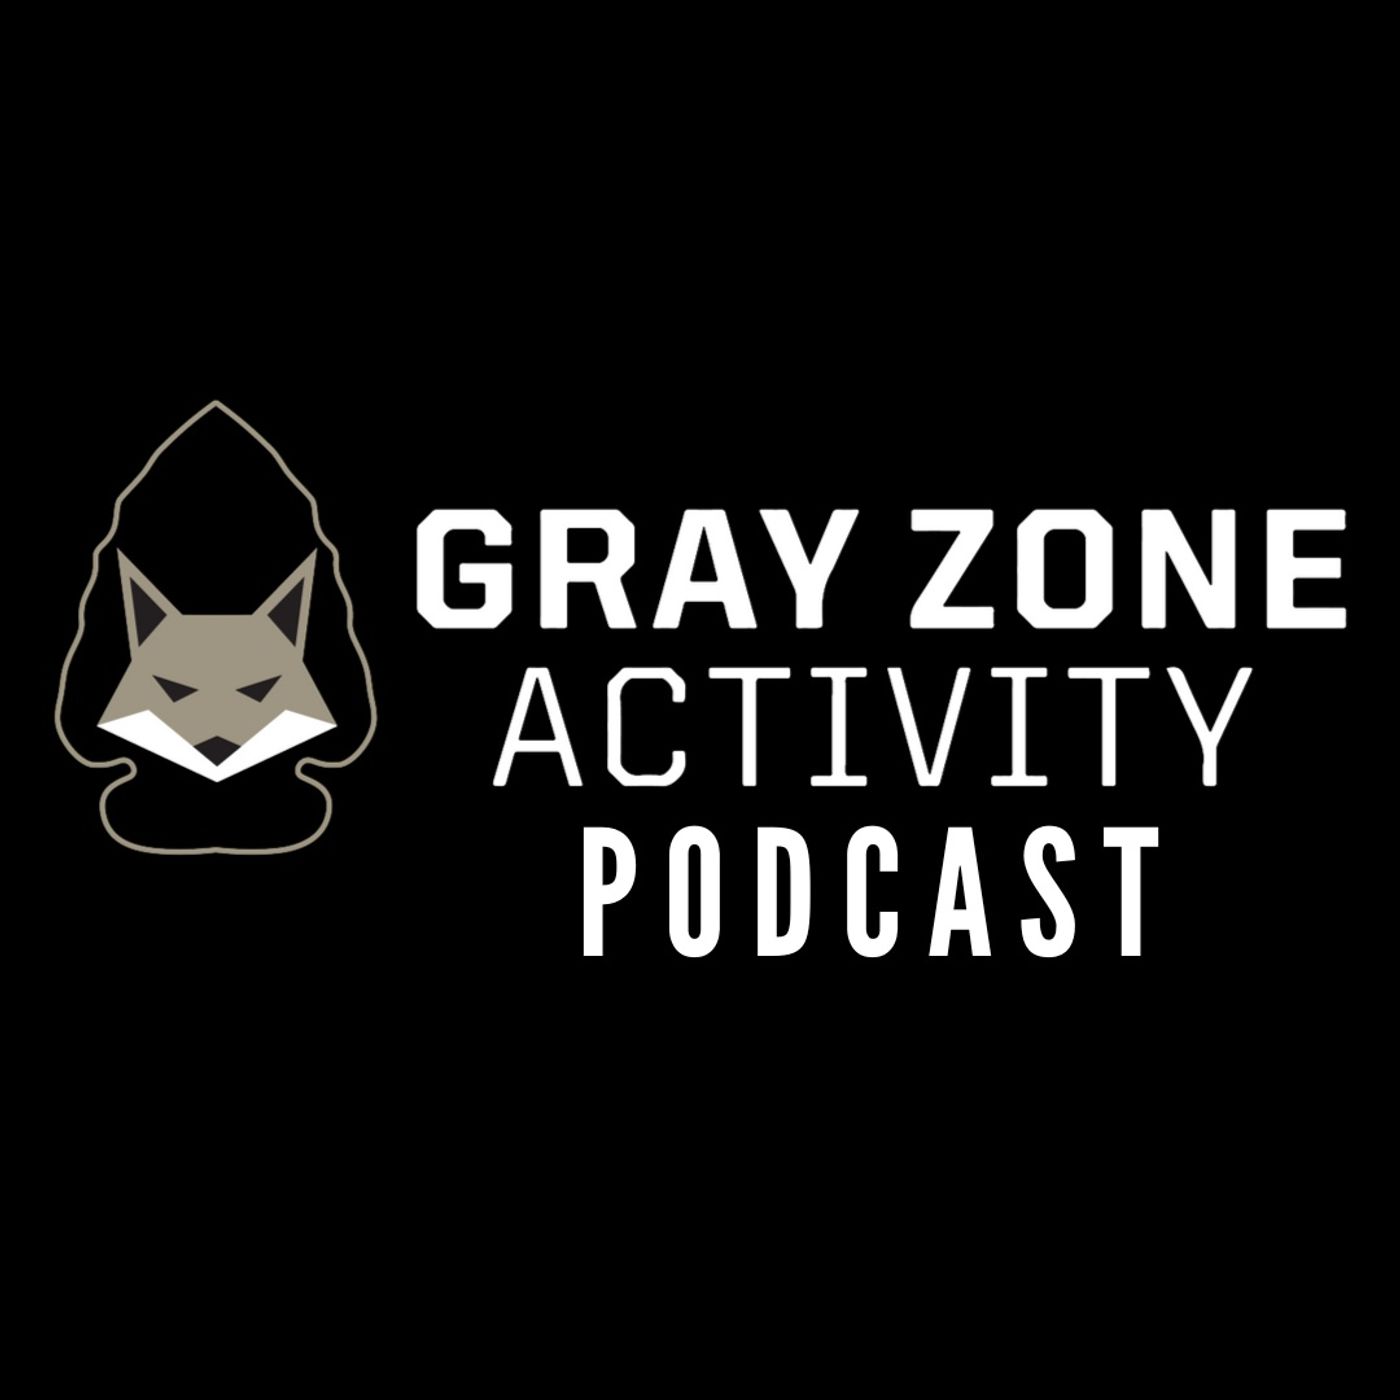 Gray Zone Activity Podcast